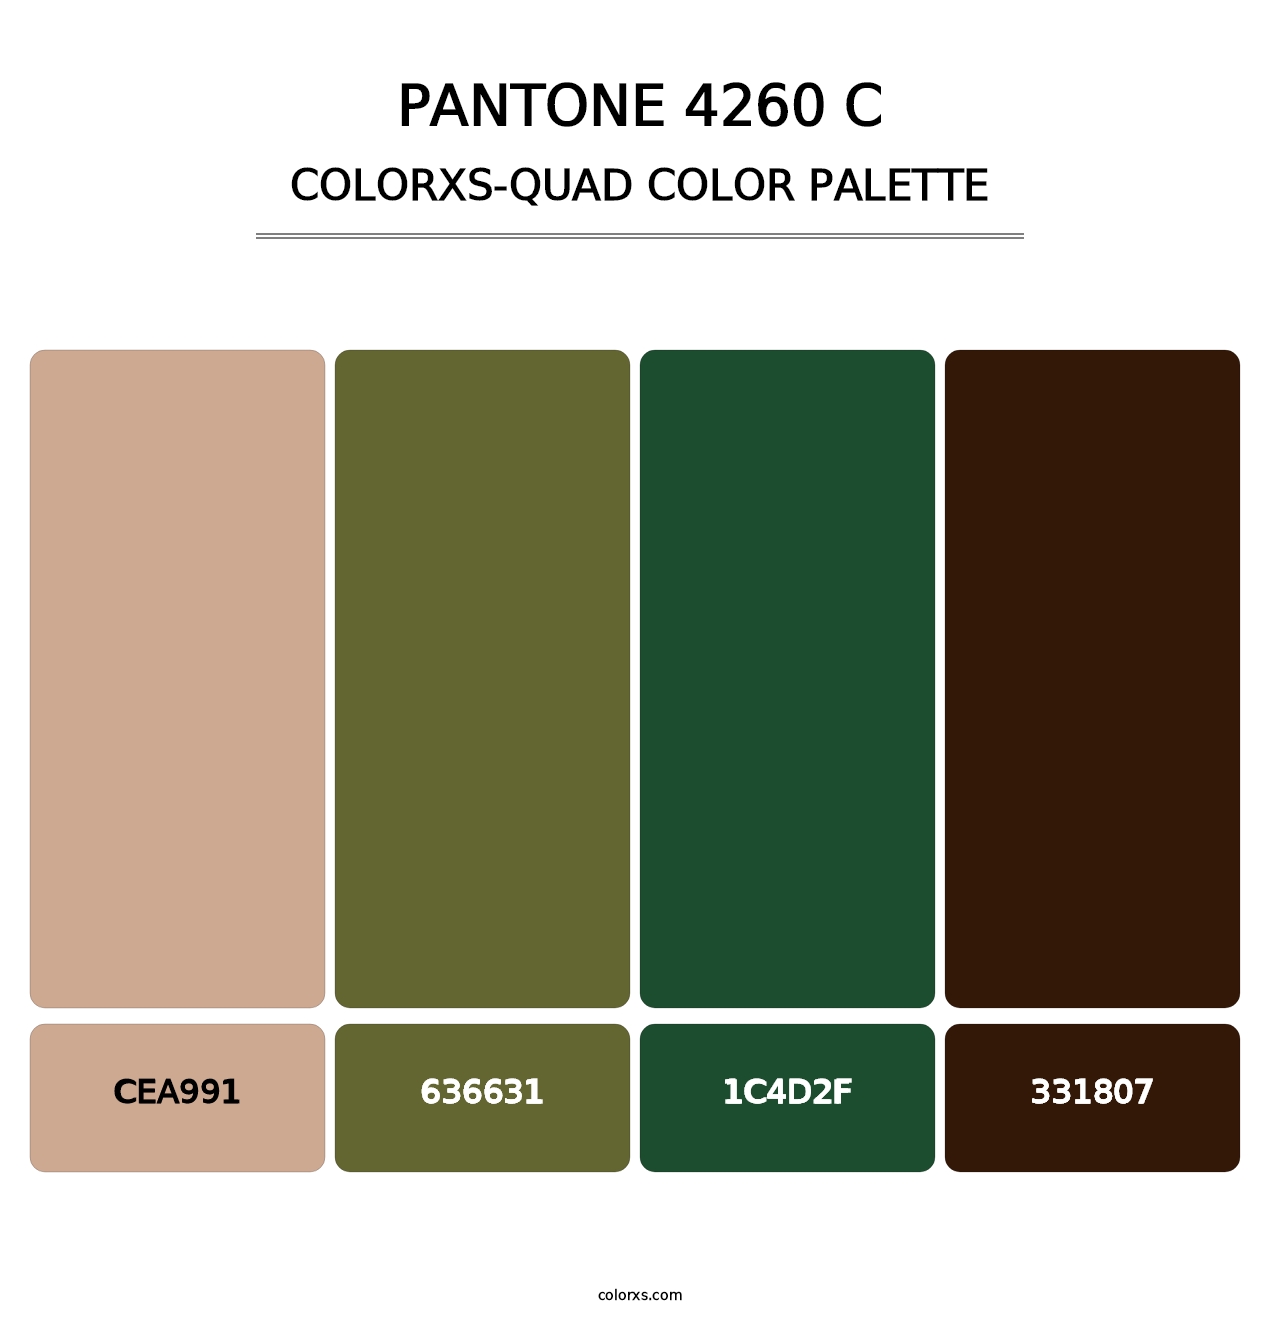 PANTONE 4260 C - Colorxs Quad Palette